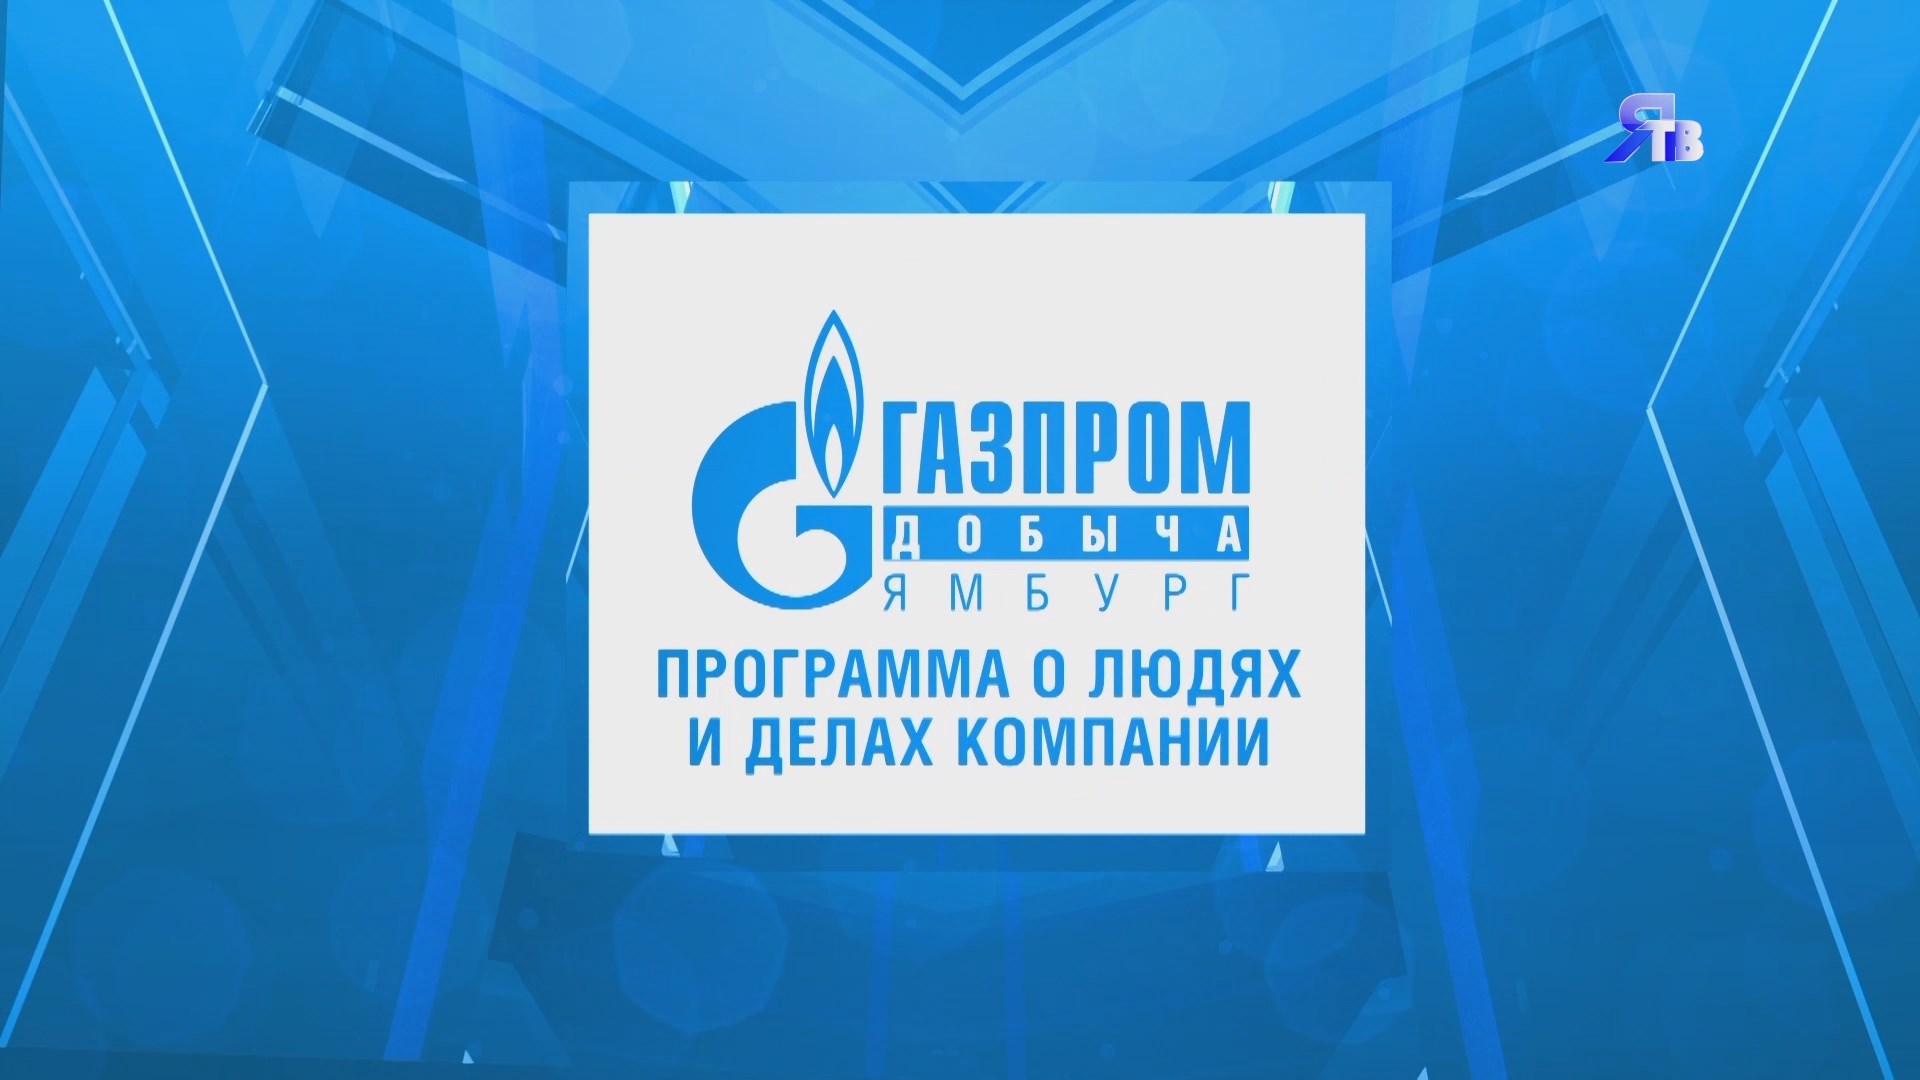 7 ноября / Программа о людях и делах компании ООО "Газпром добыча Ямбург"